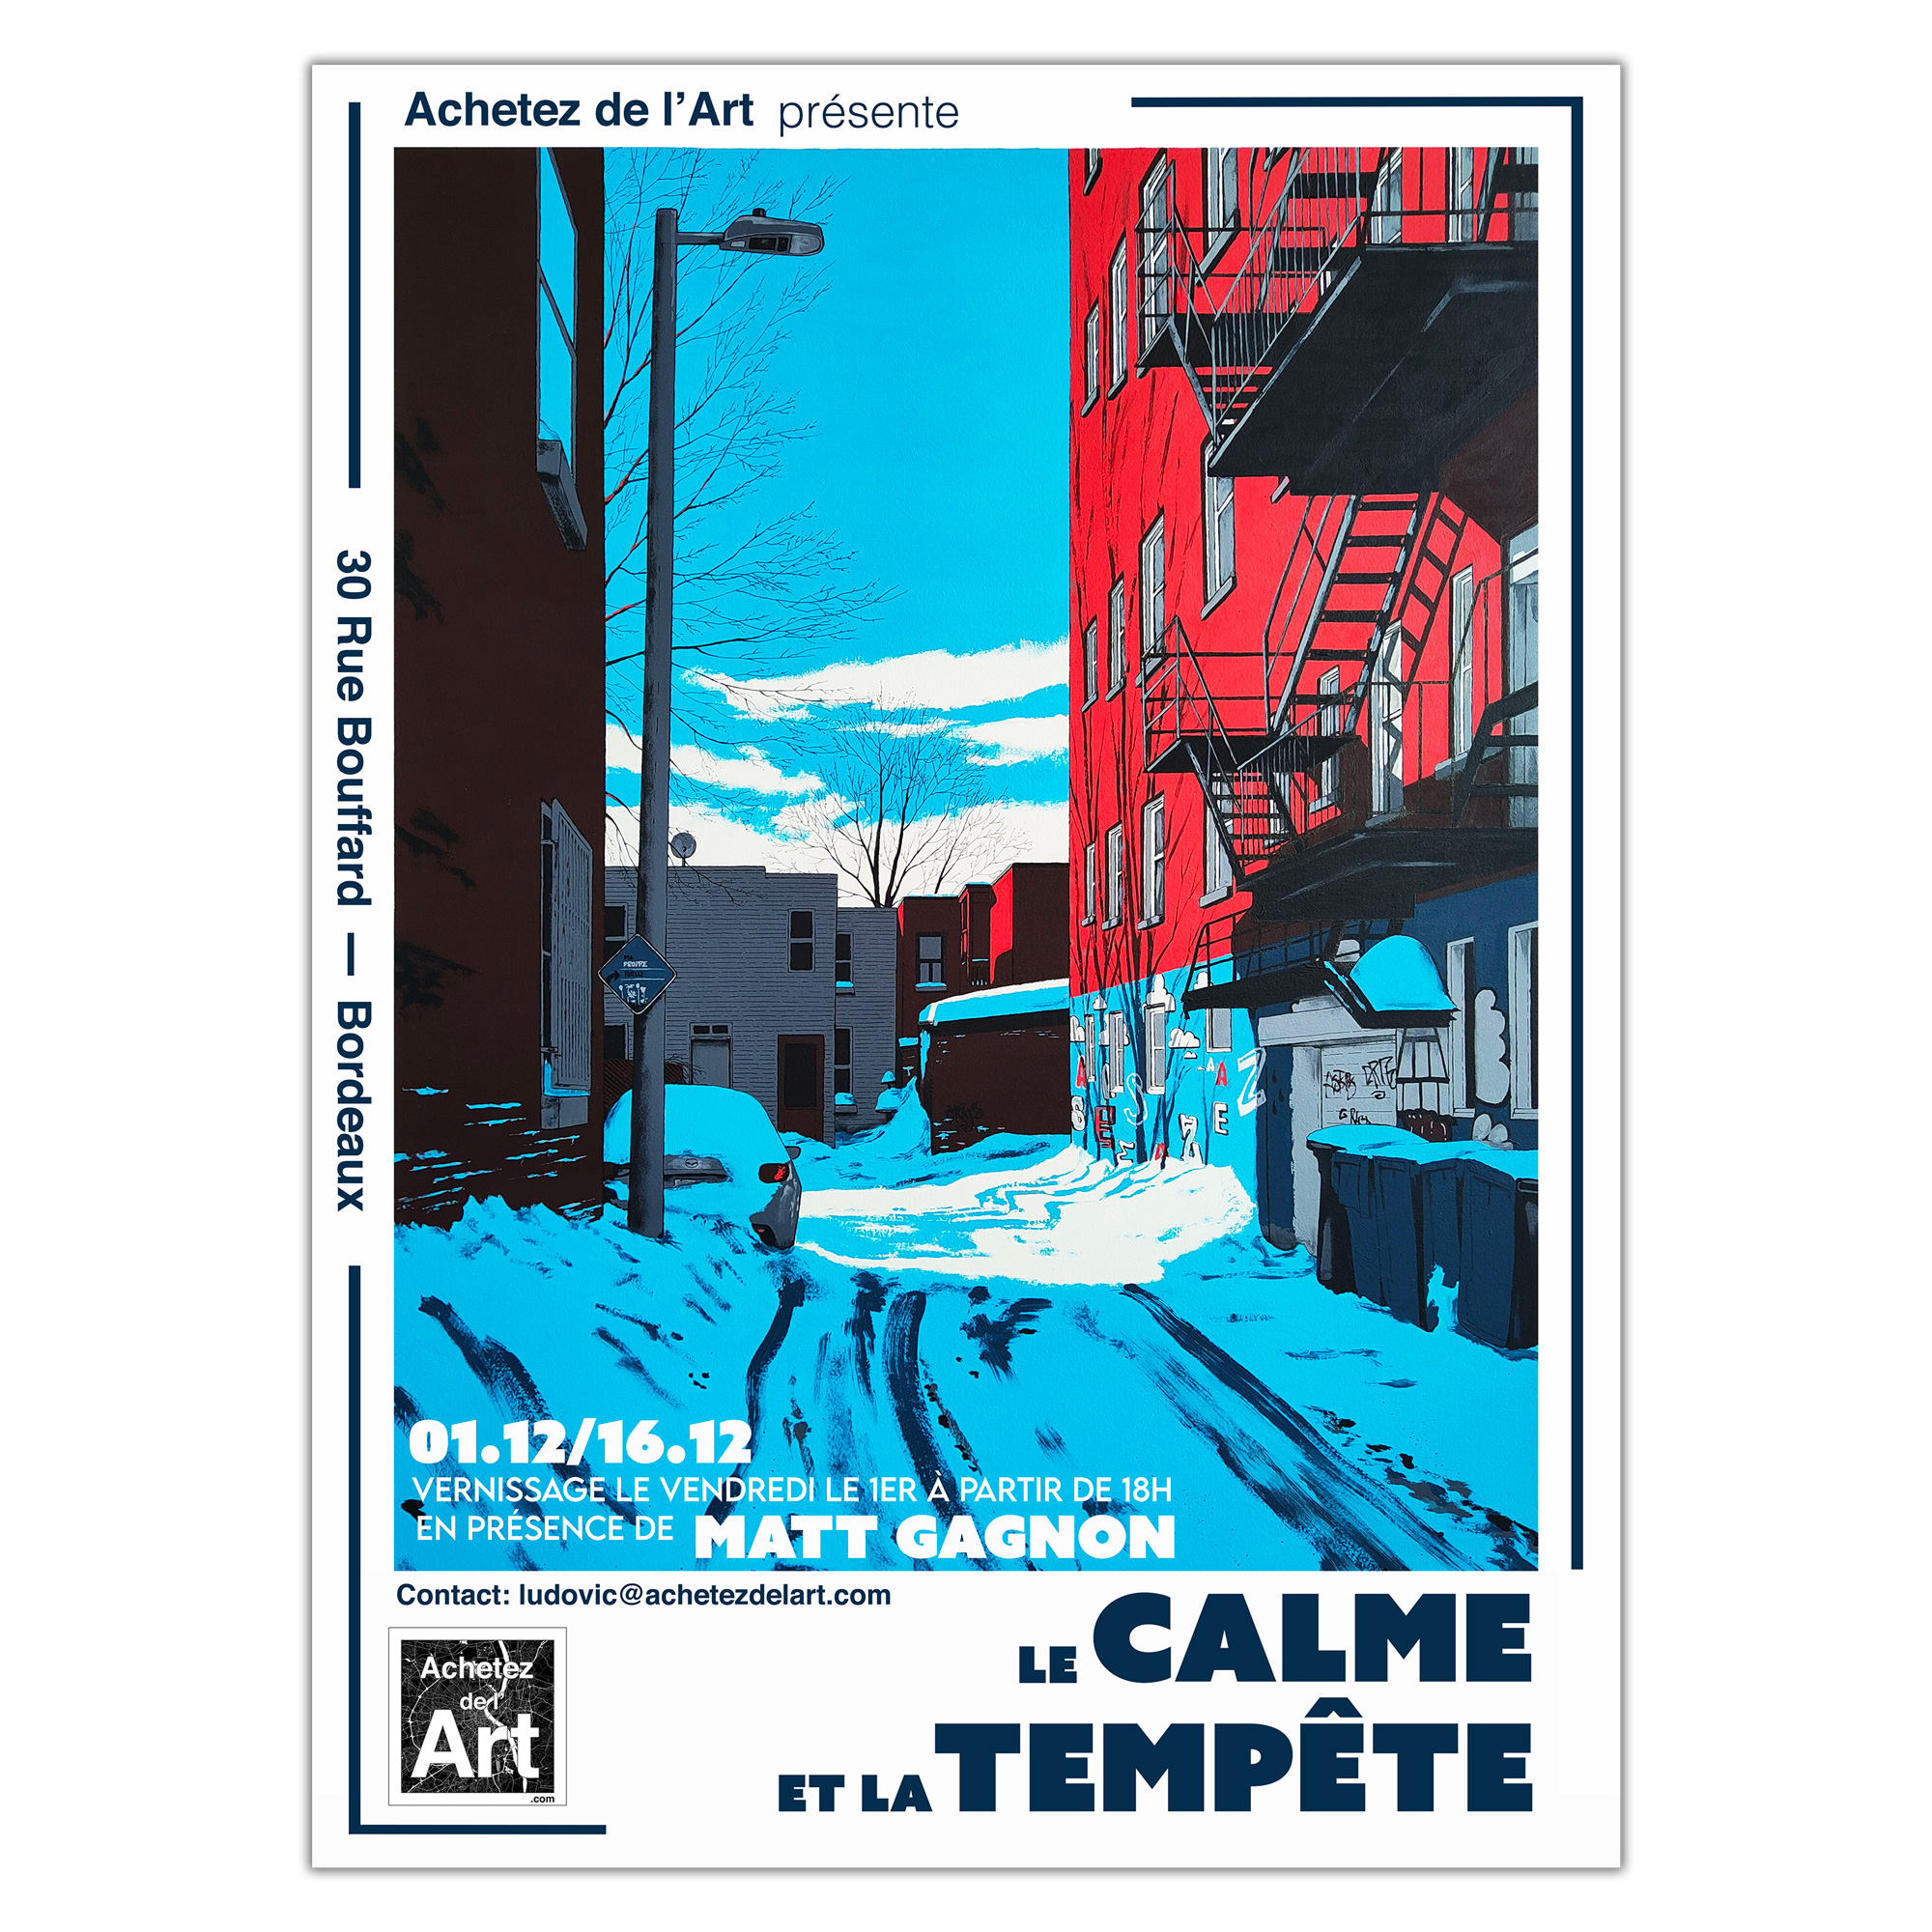 Matt Gagnon - exposition Le calme et la Tempête - Achetez de l'Art Bordeaux